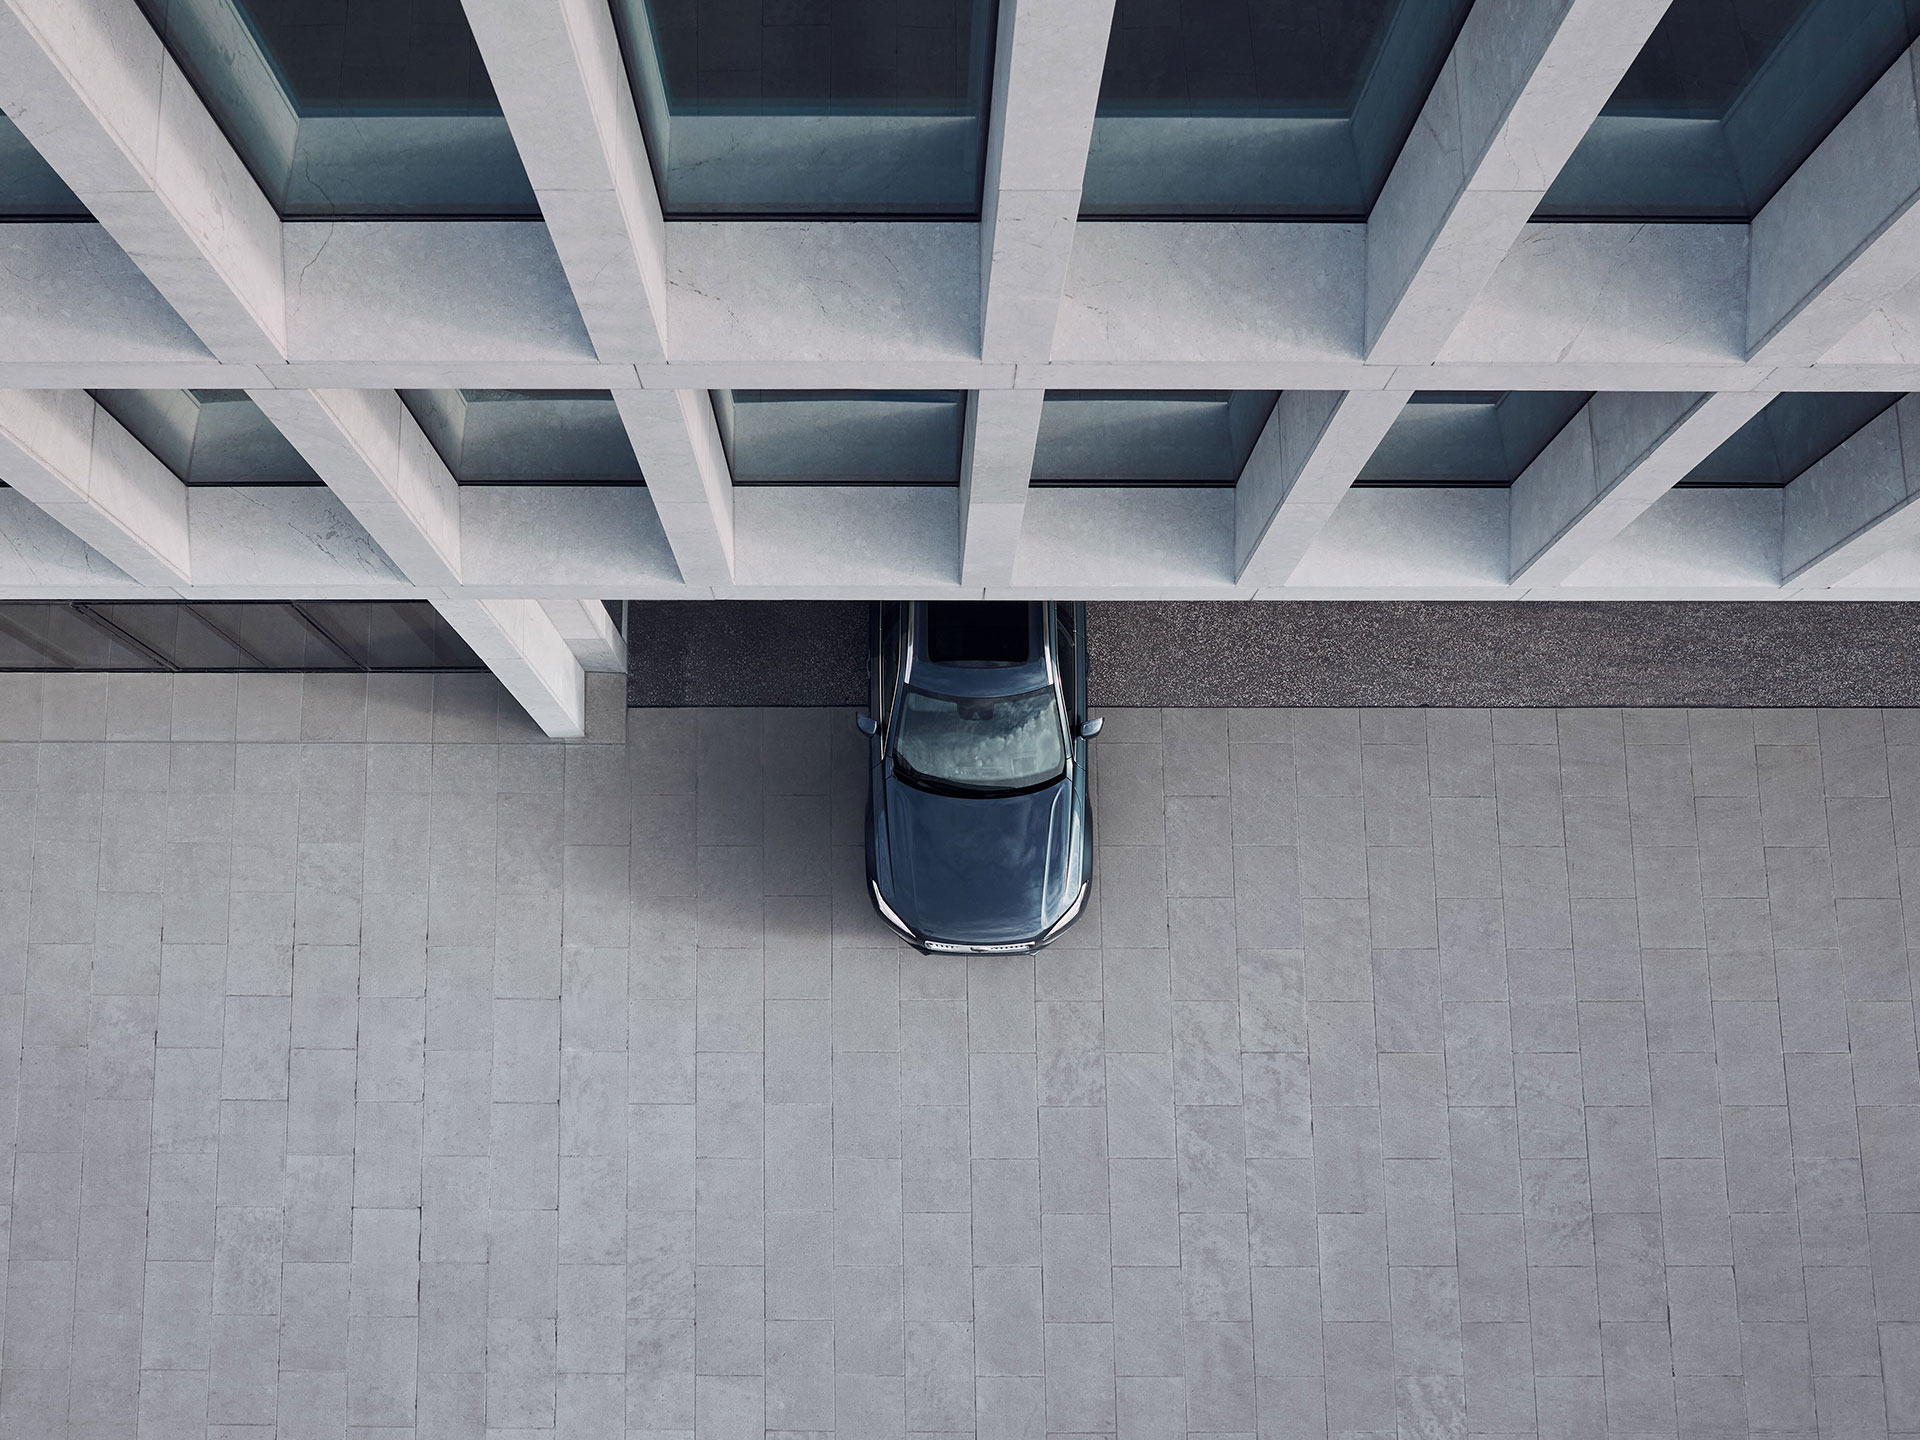 Een bovenaanzicht van de voorste helft van een Volvo-auto die wegrijdt bij een gebouw in de stad.